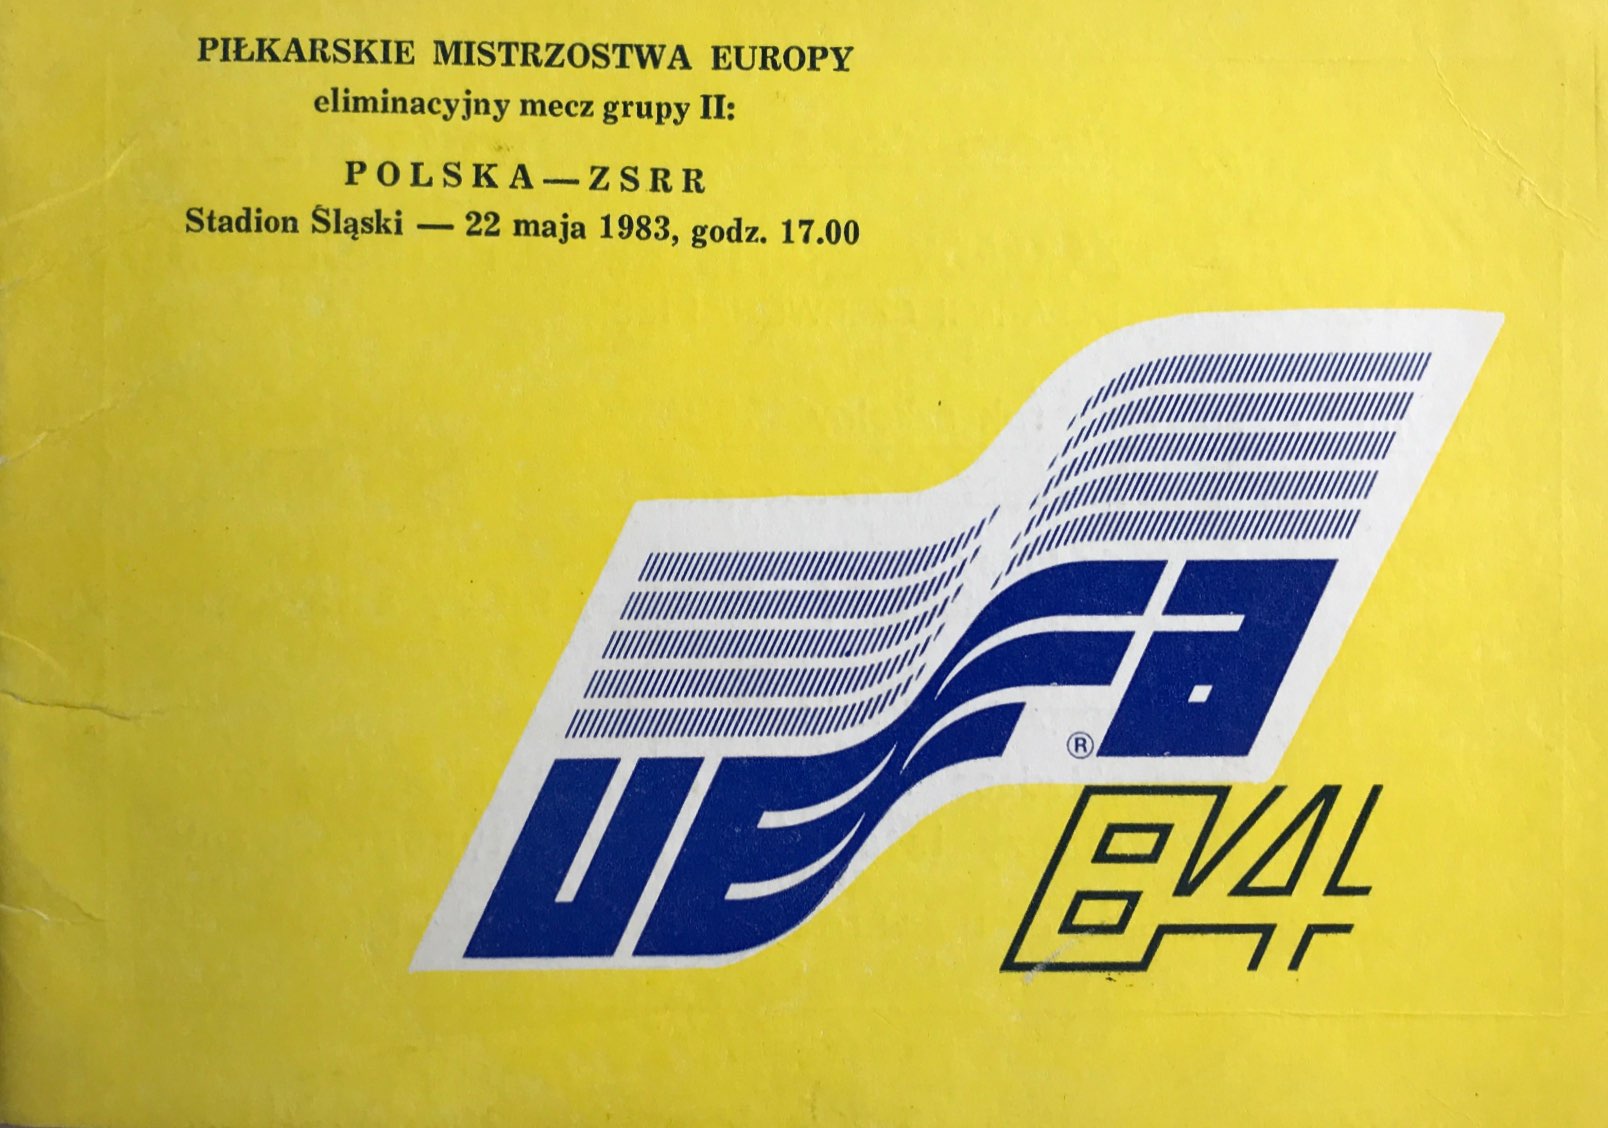 Program meczowy Polska - ZSRR 1:1 (22.05.1983).